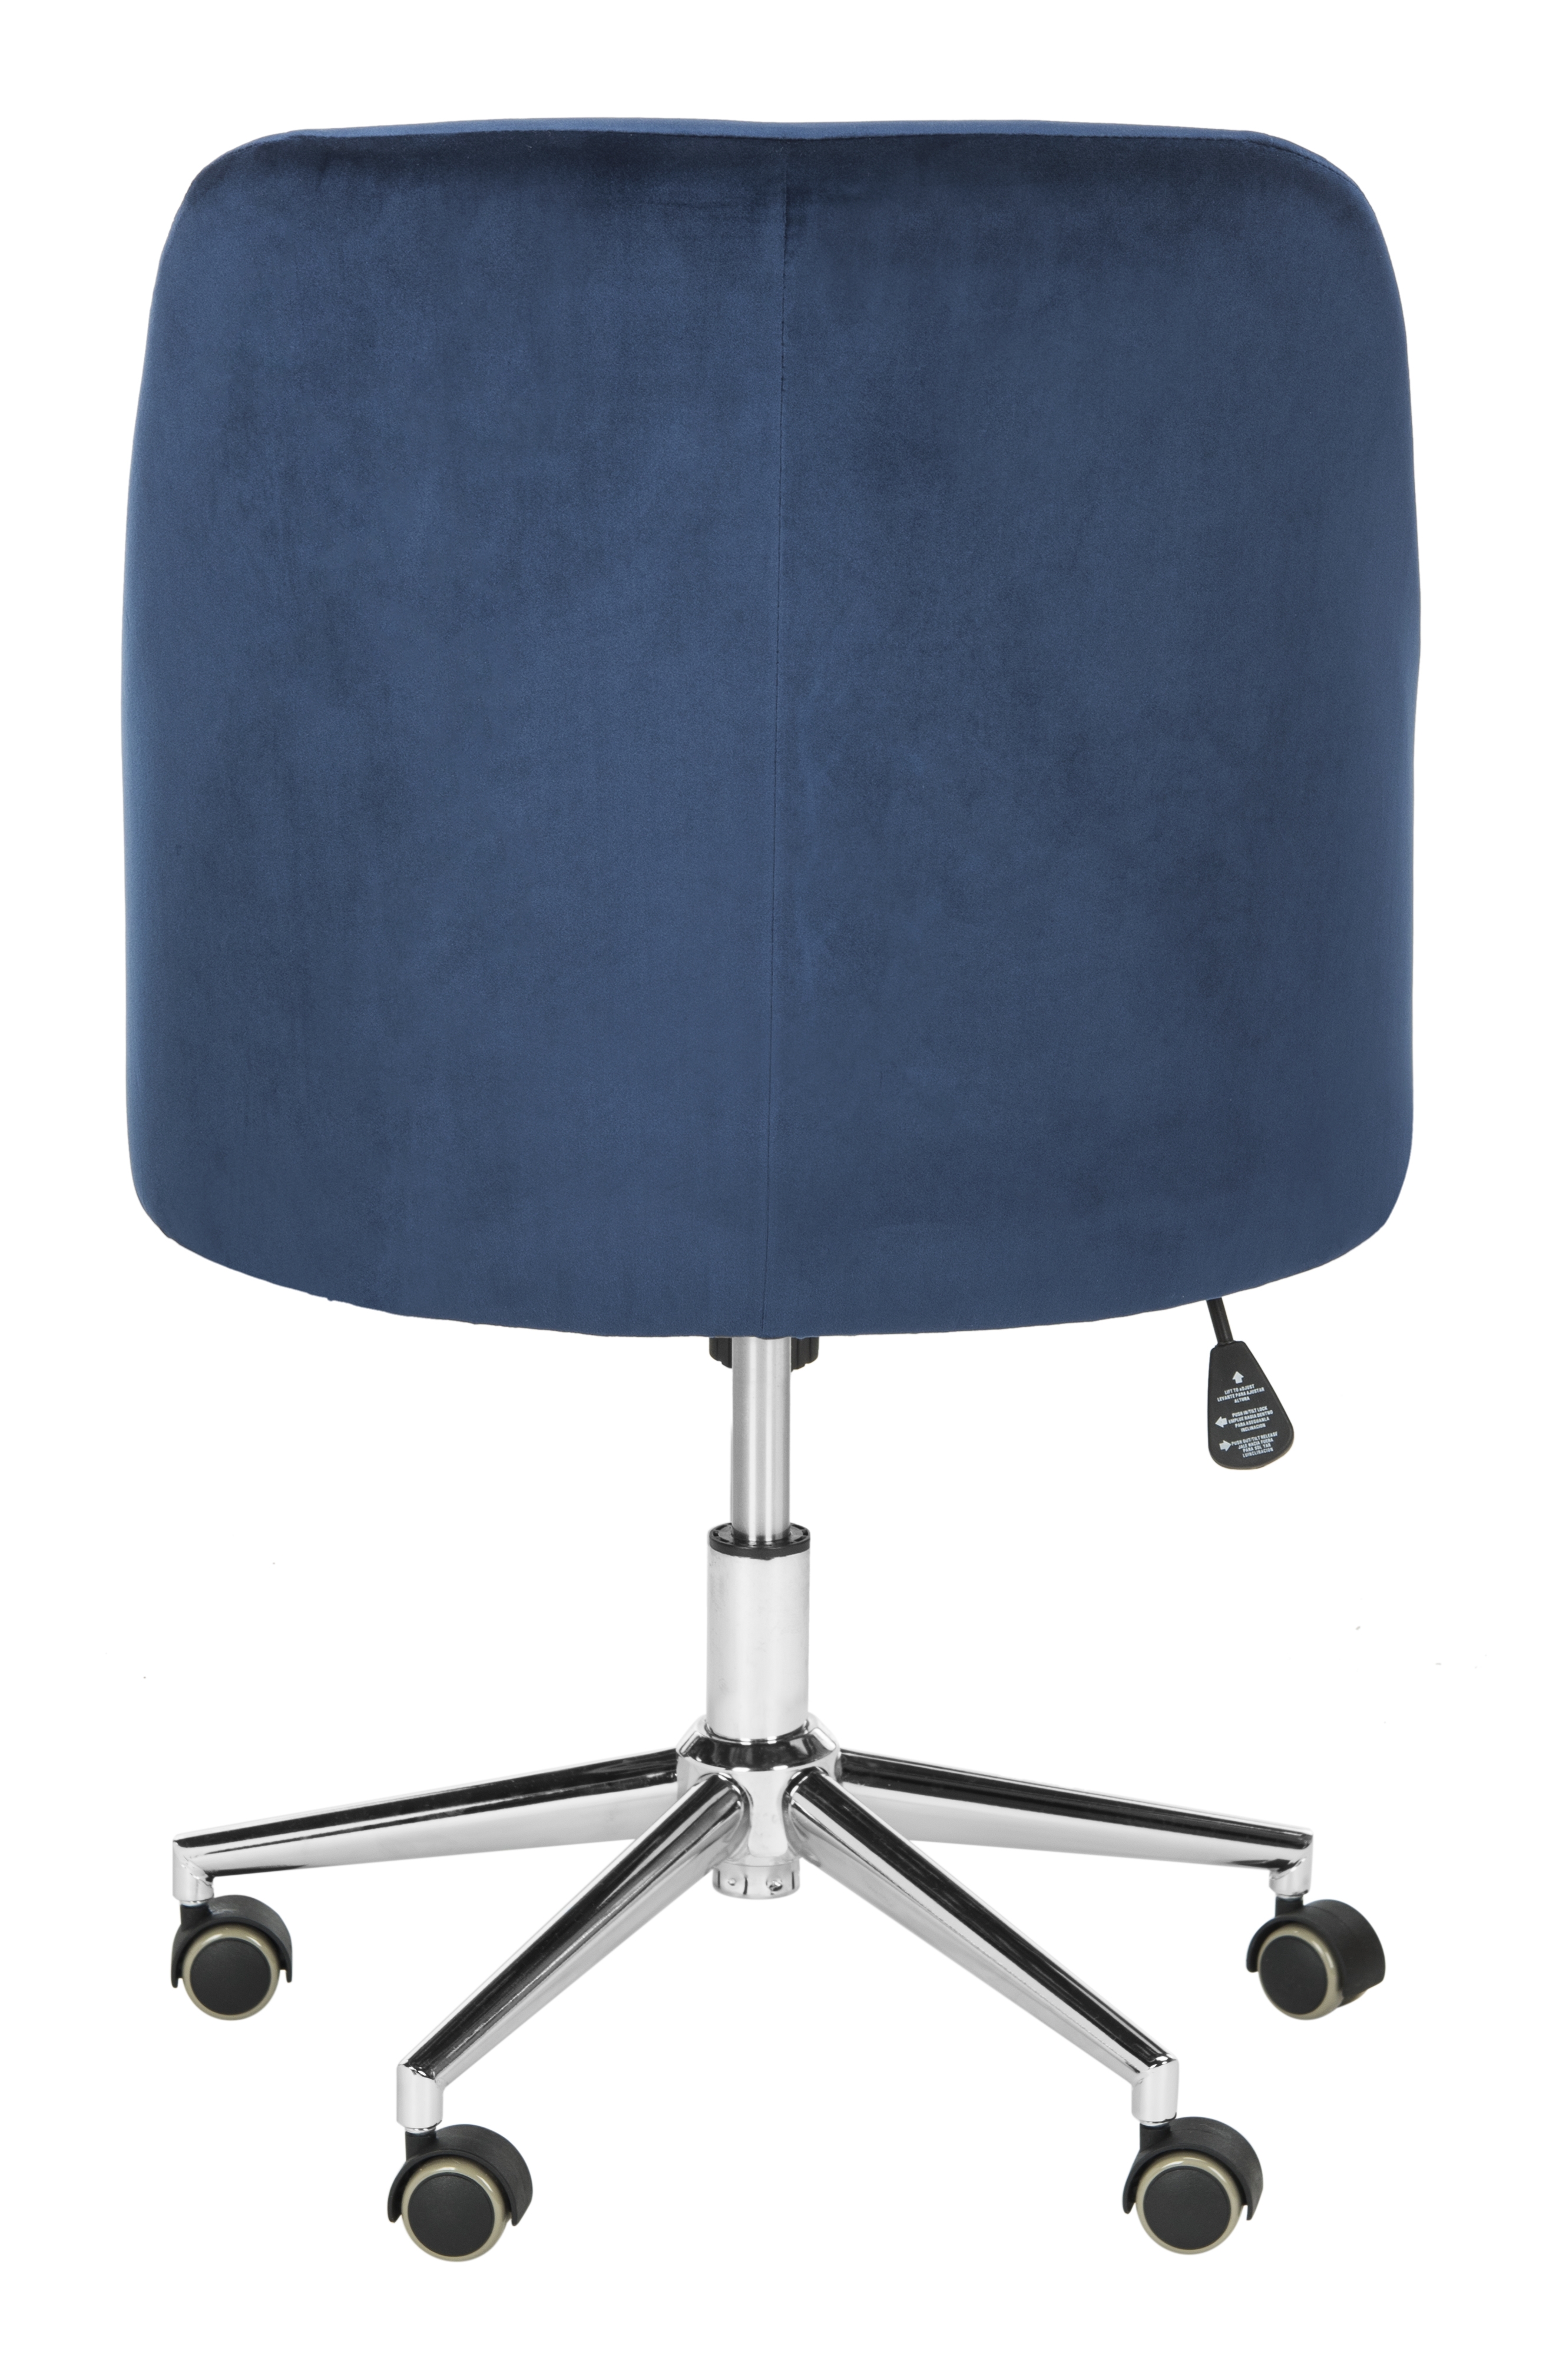 Adrienne Velvet Chrome Leg Swivel Office Chair - Navy/Chrome - Safavieh - Image 3